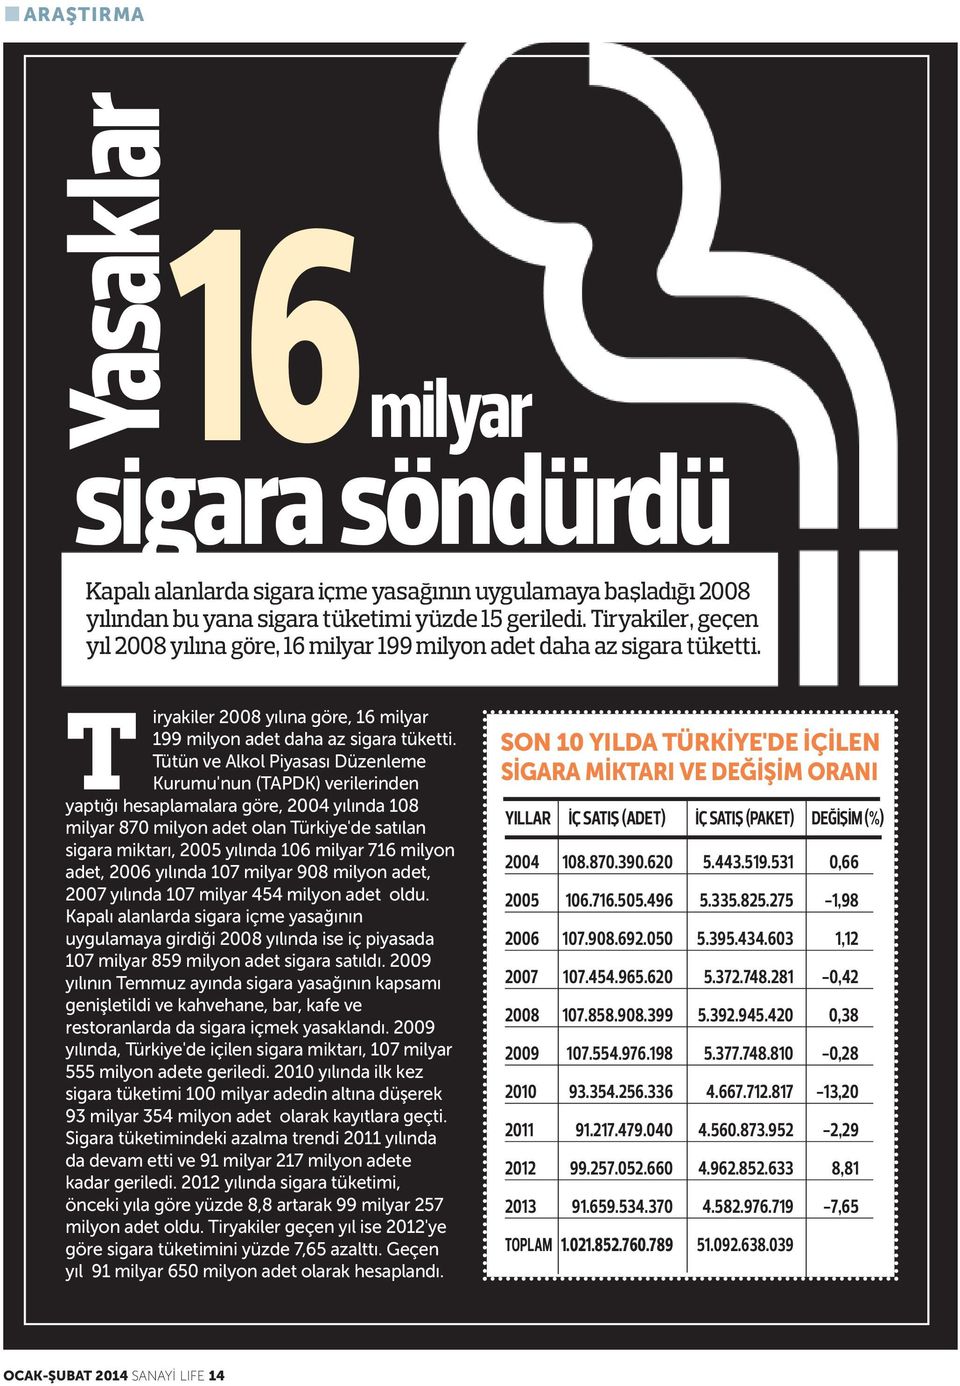 Tütün ve Alkol Piyasası Düzenleme Kurumu'nun (TAPDK) verilerinden yaptığı hesaplamalara göre, 2004 yılında 108 milyar 870 milyon adet olan Türkiye'de satılan sigara miktarı, 2005 yılında 106 milyar